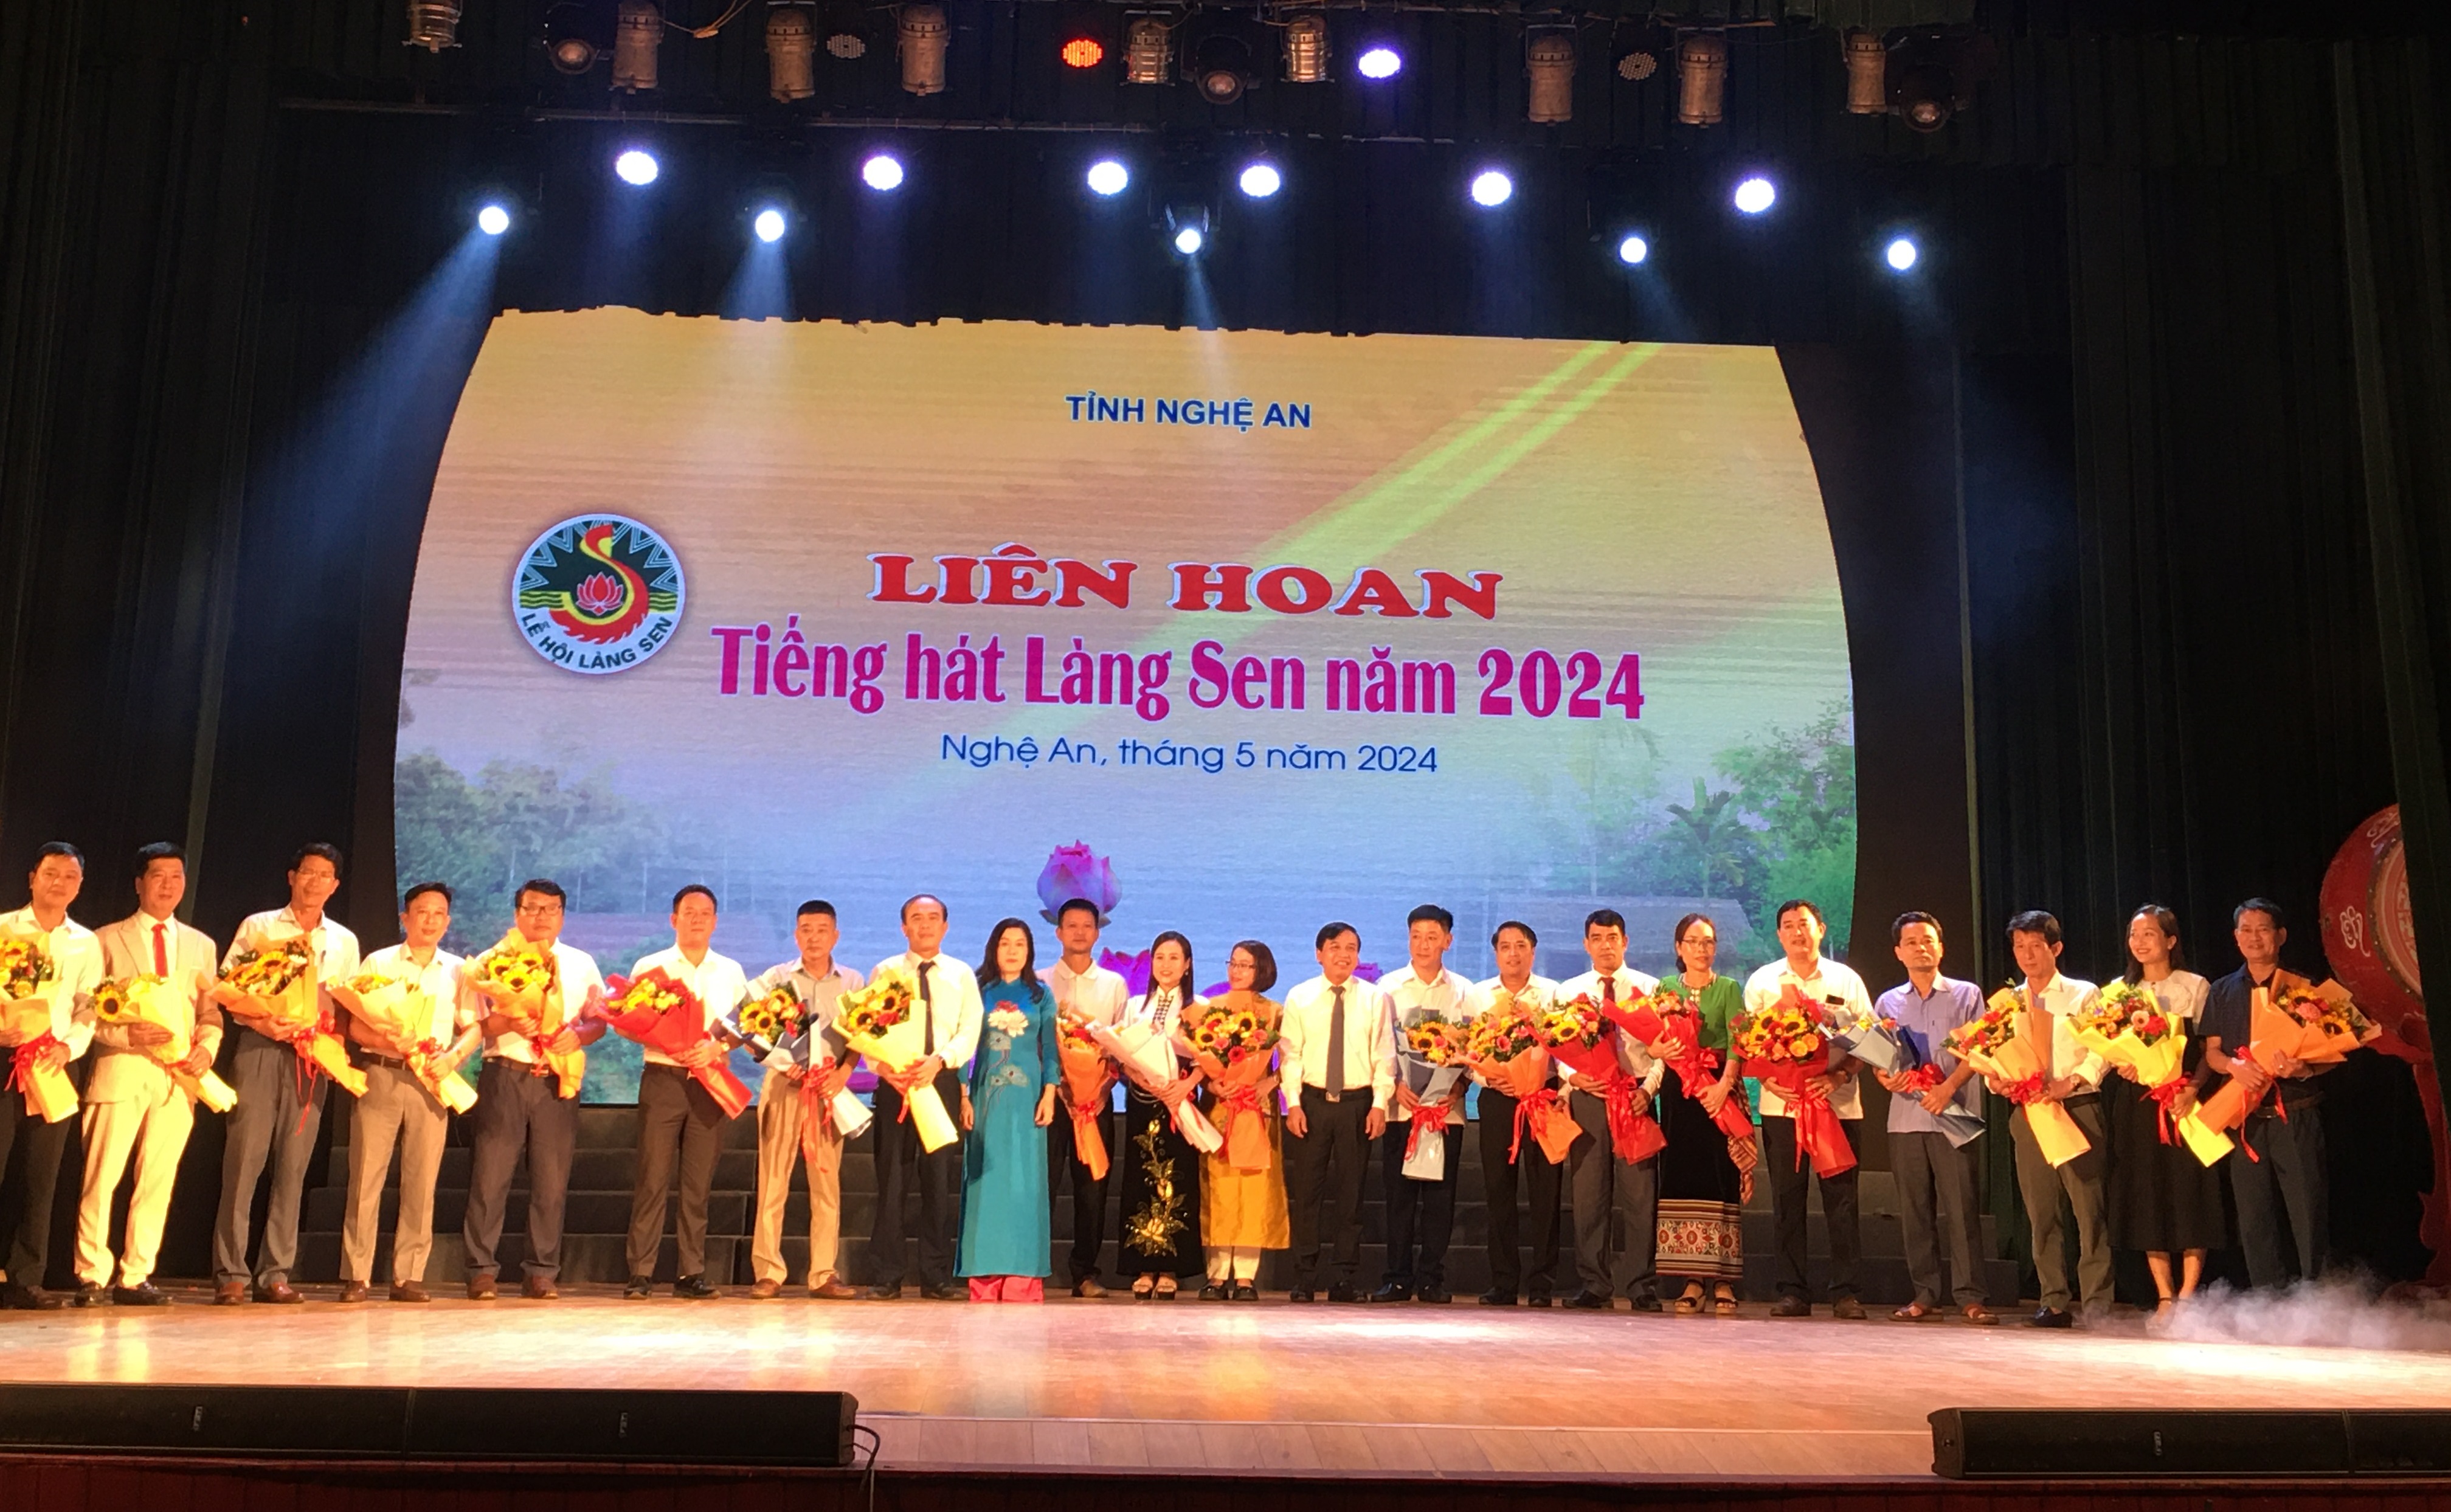 20 đoàn nghệ thuật quần chúng tham gia Liên hoan Tiếng hát Làng Sen năm 2024